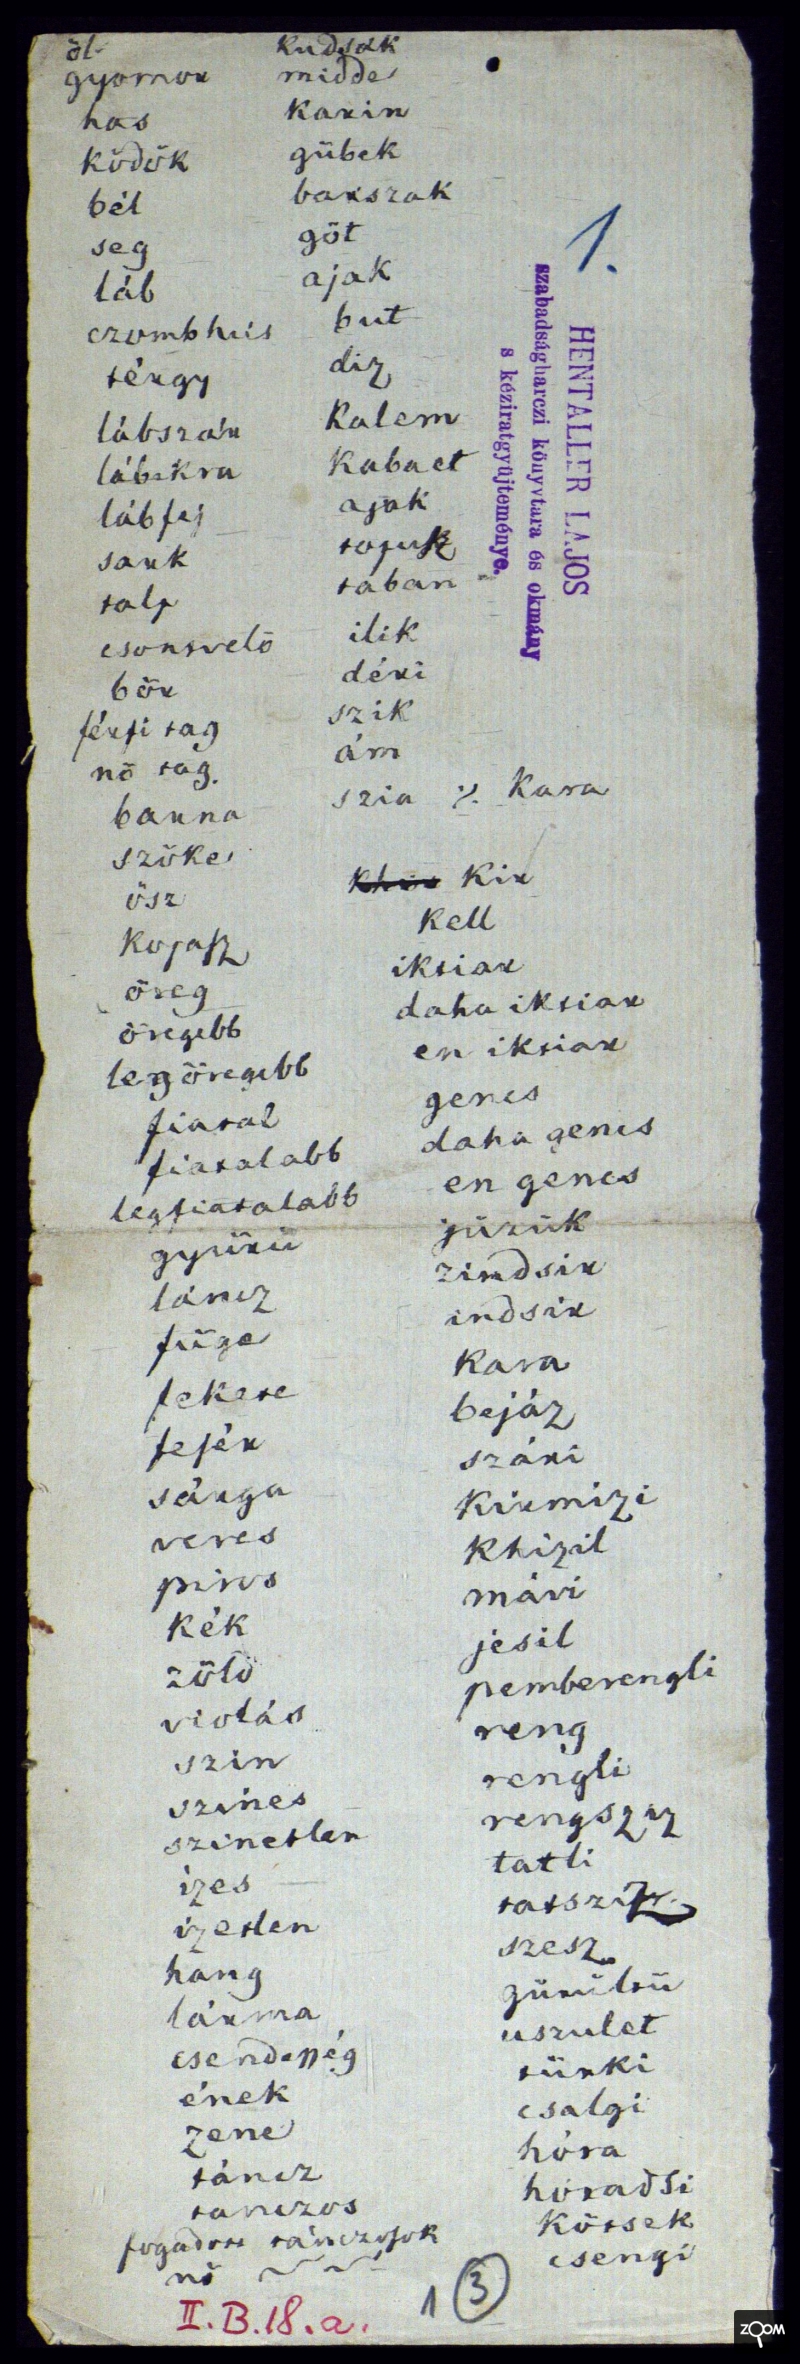 Kossuth török szótára, mely Vidinben készült. - Forrás: Országos levéltár